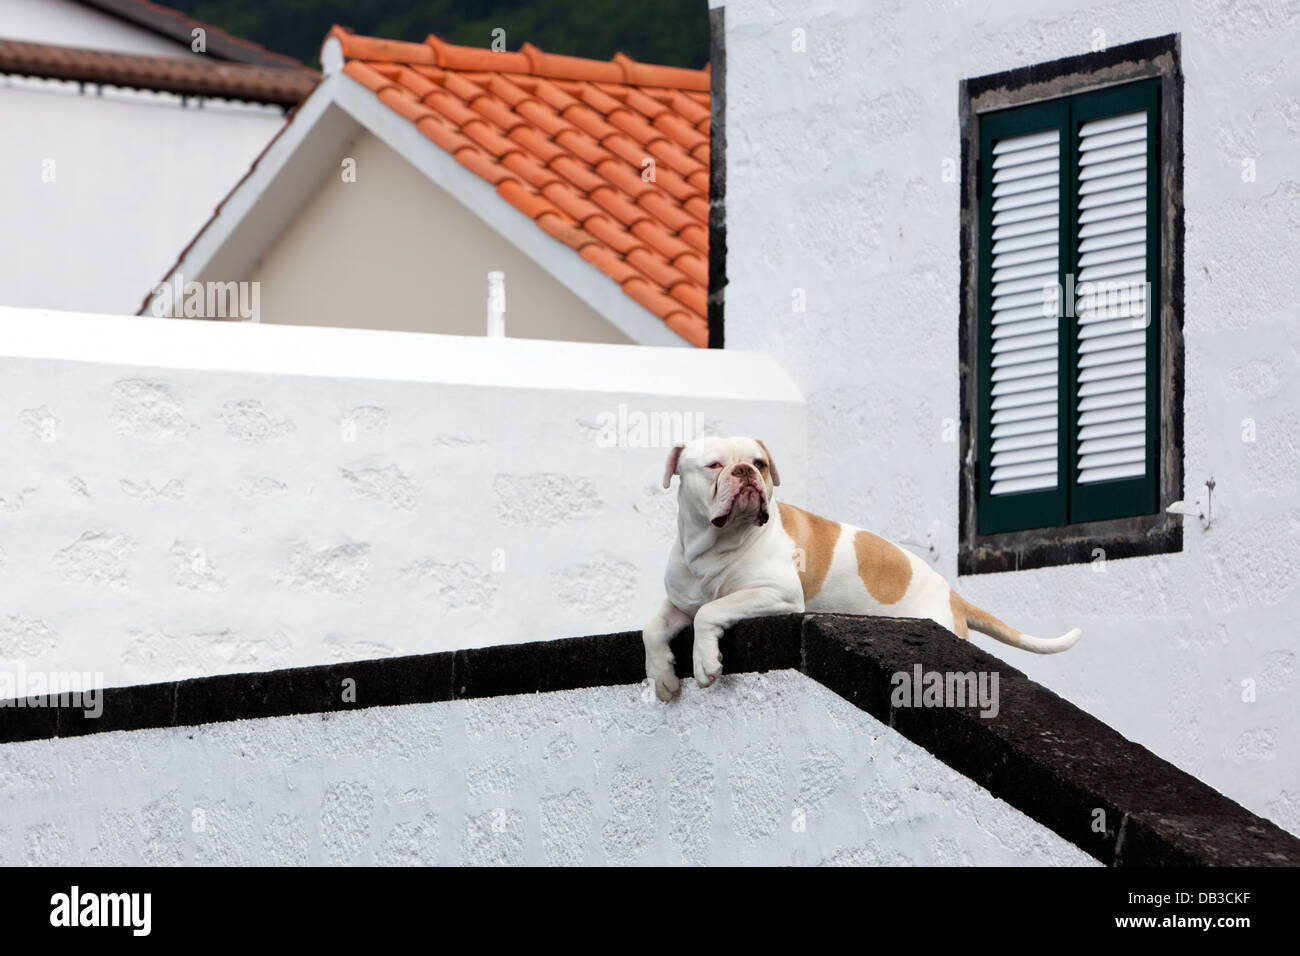 Vigilancia atenta, presumiblemente un Mastín raza, vigilando la entrada de una casa. Foto de stock